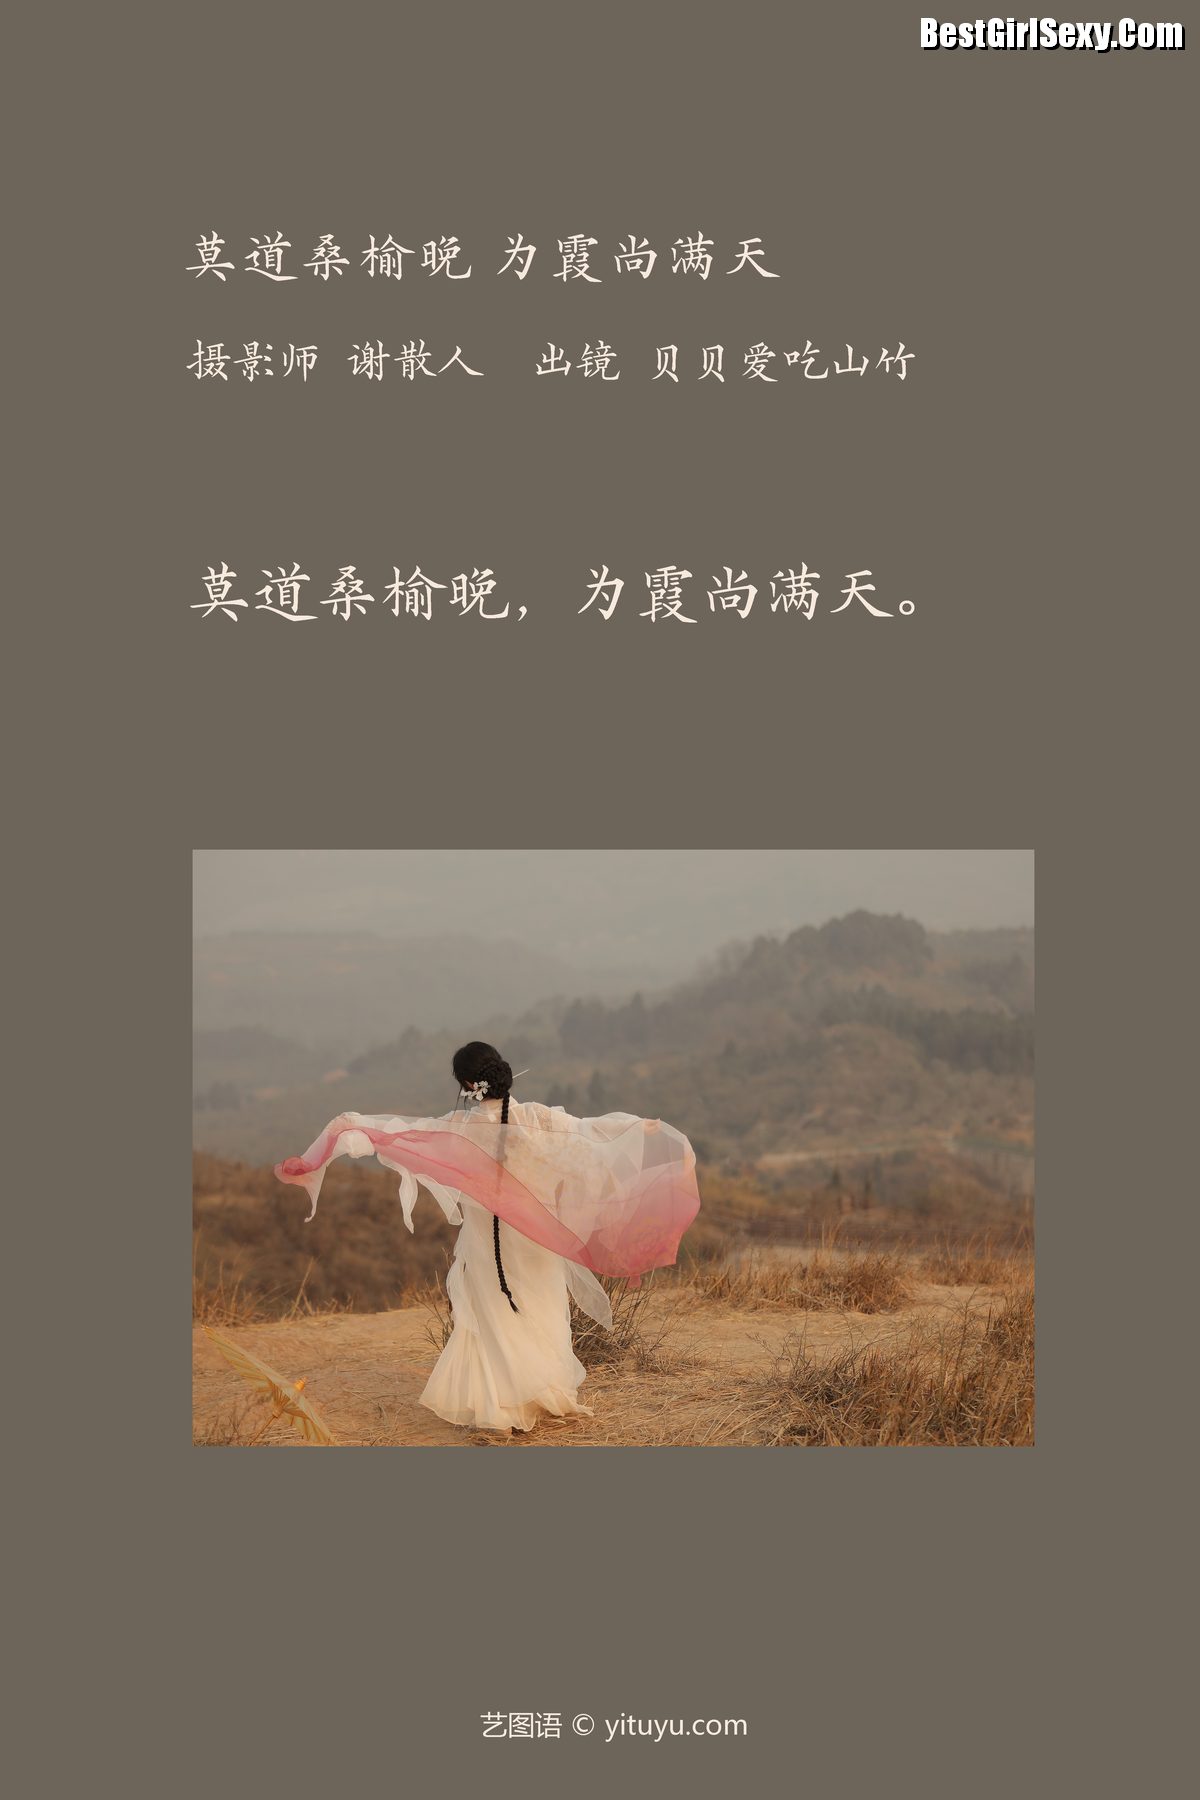 YiTuYu艺图语 Vol 3962 Bei Bei Ai Chi Shan Zhu 0002 2168376359.jpg